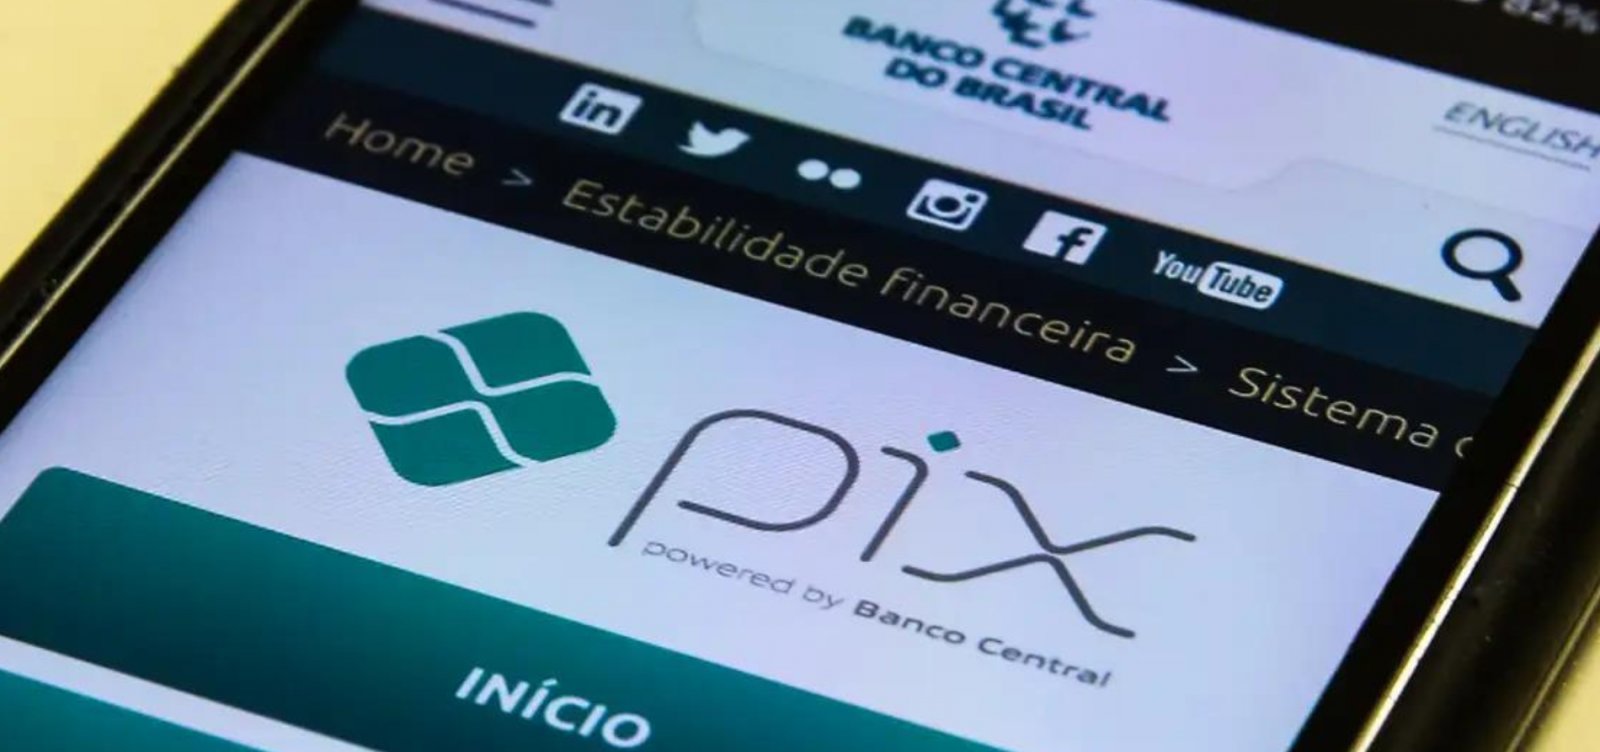 Pix bate recorde com 201 milhões de transações em um único dia